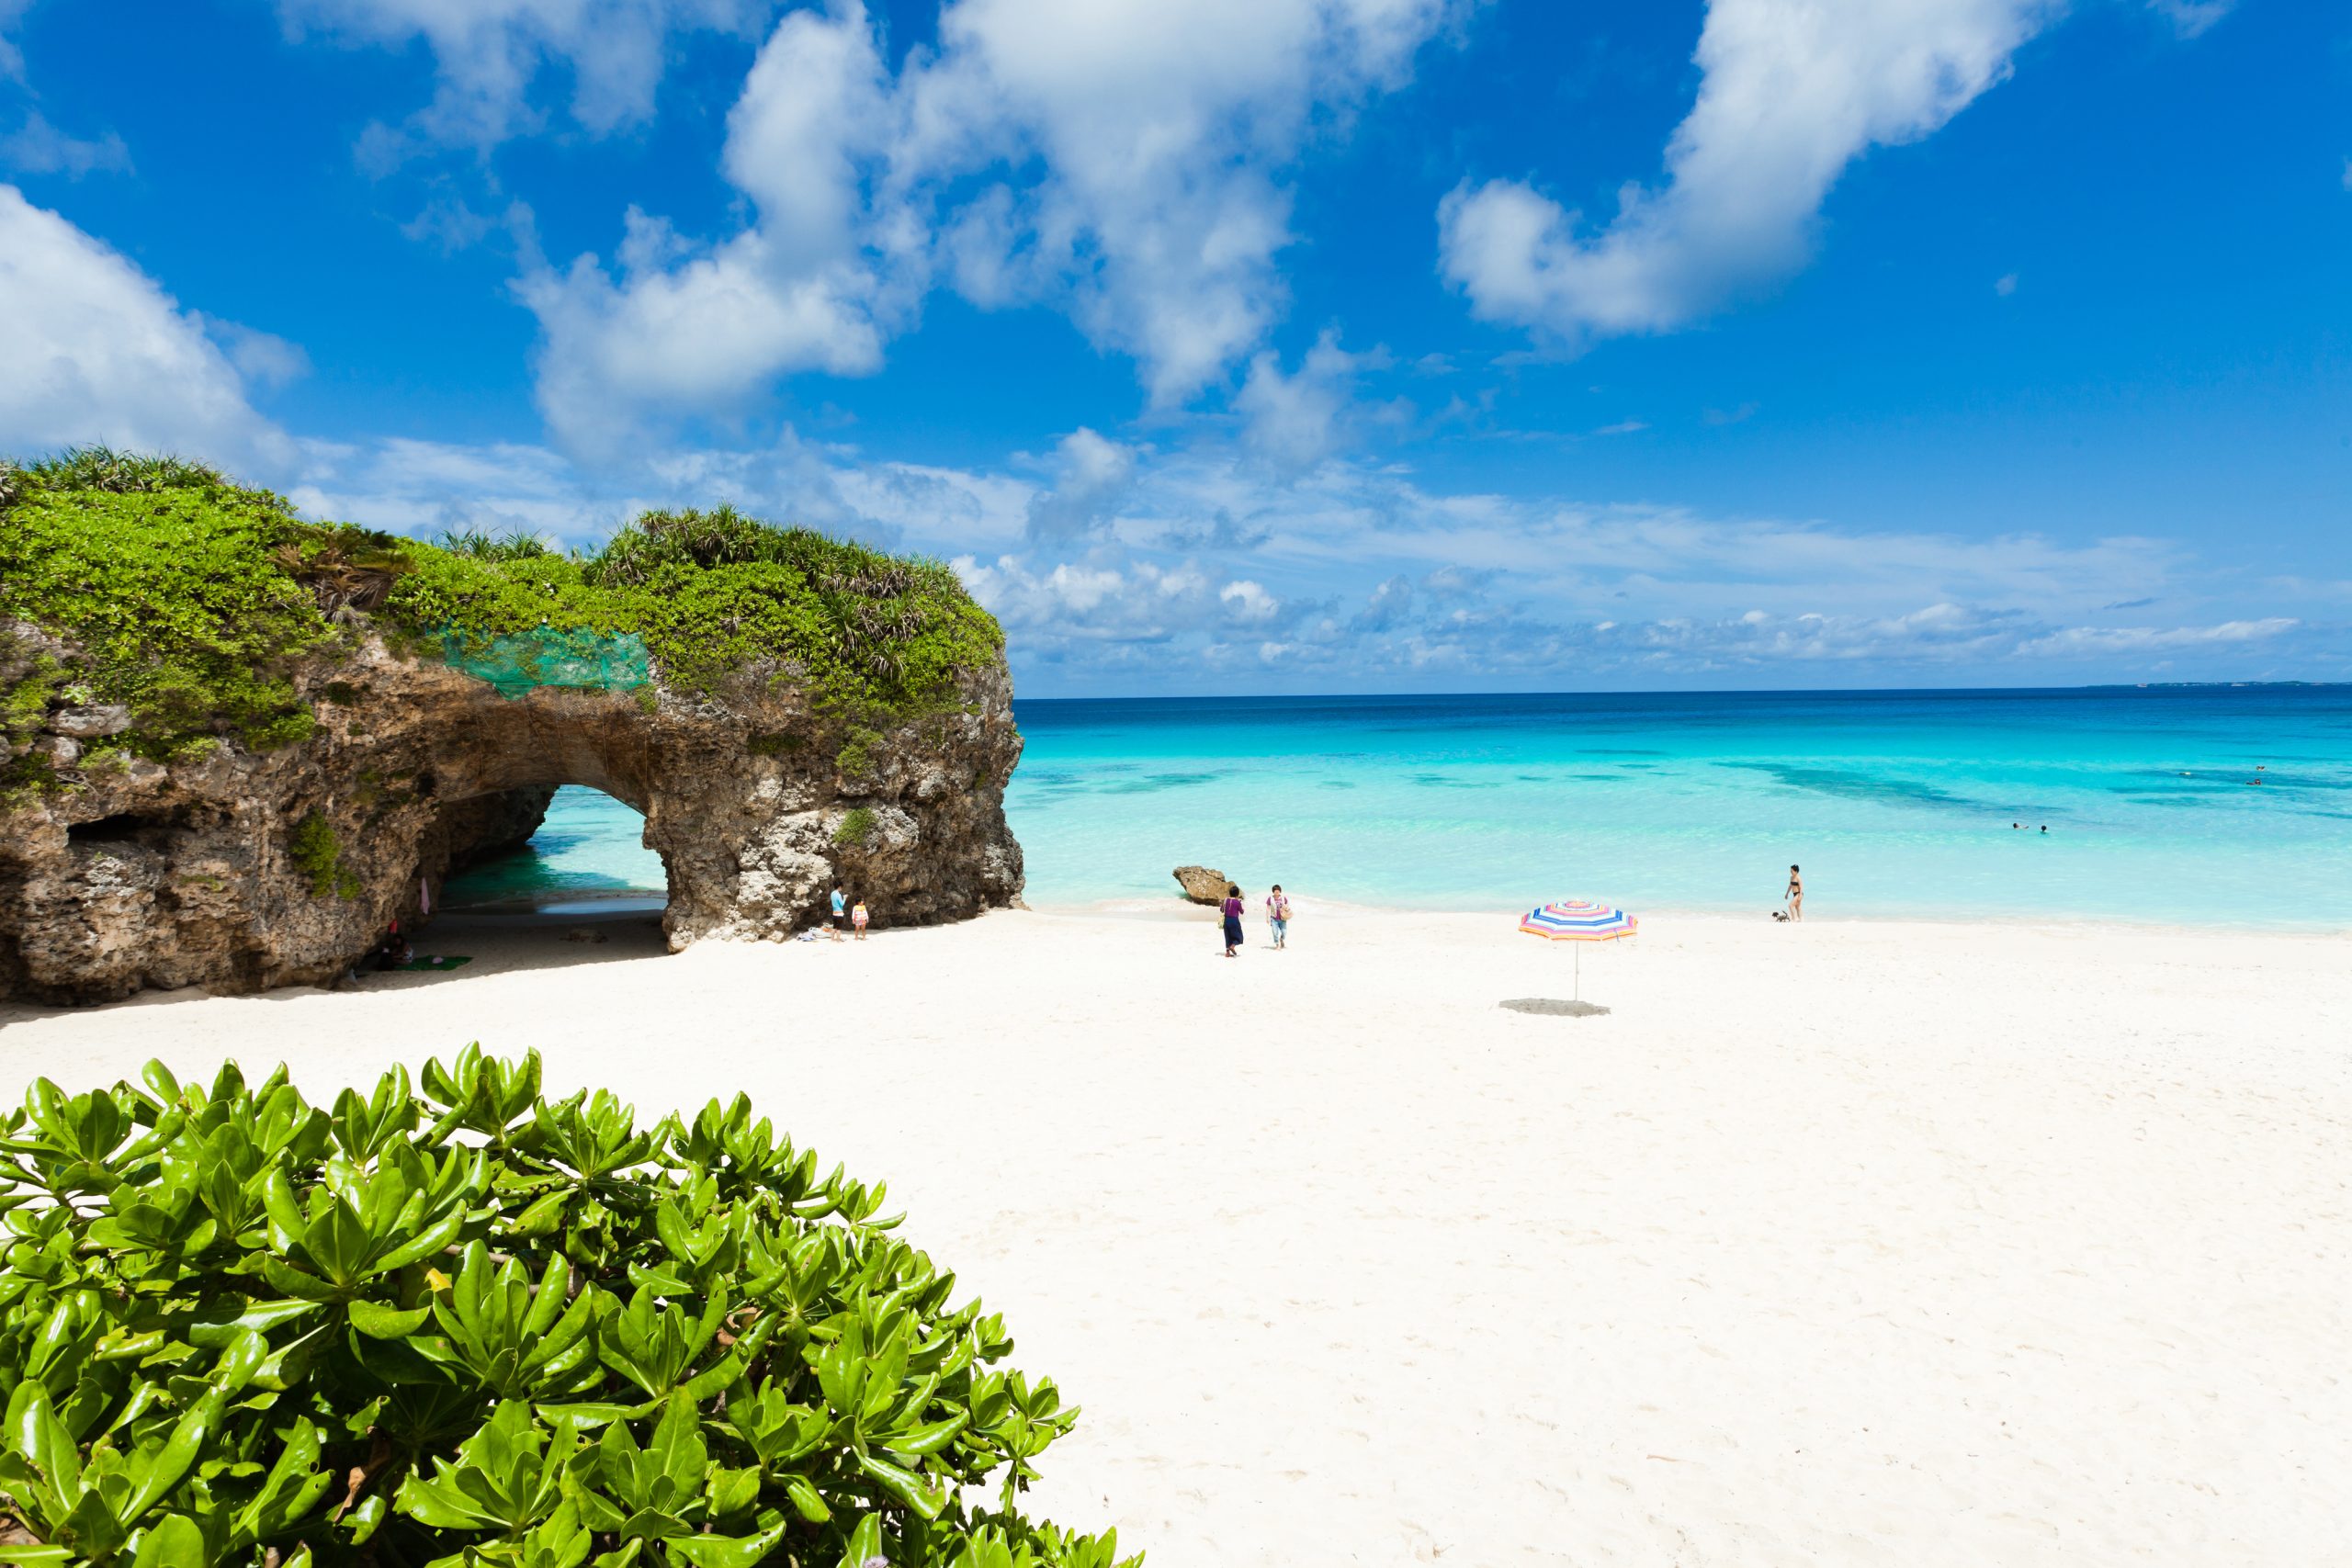 The stunning beaches of Okinawa with white sand